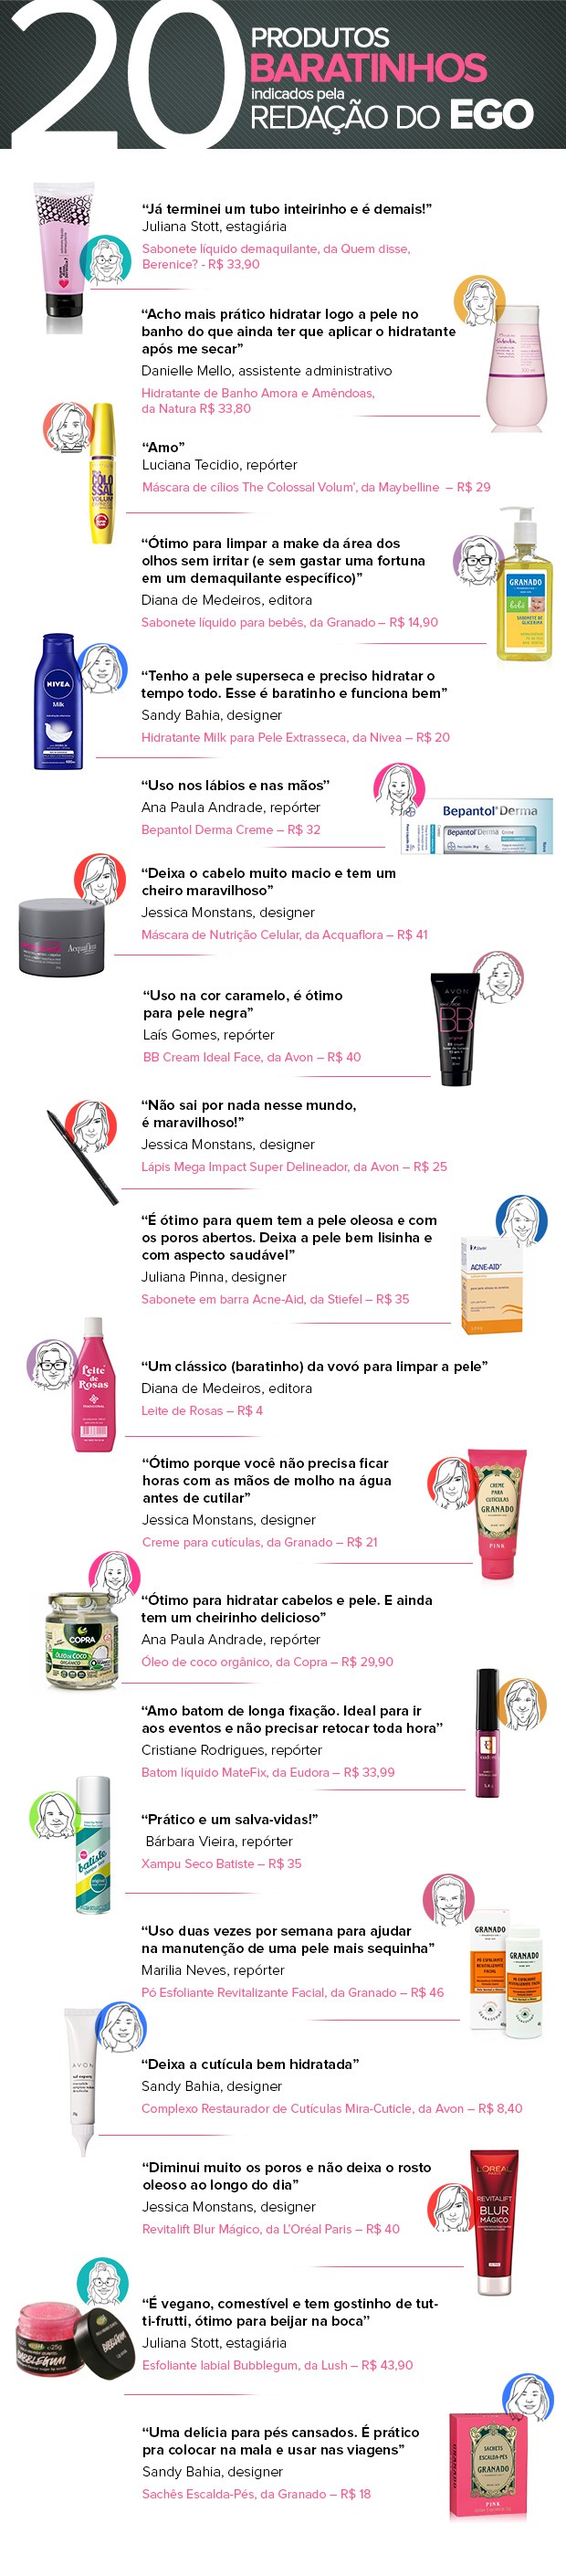 Sugestões de produtos de beleza baratinhos de acordo com as mulheres do EGO (Foto: Sandy Bahia / Enderson Santos / EGO)